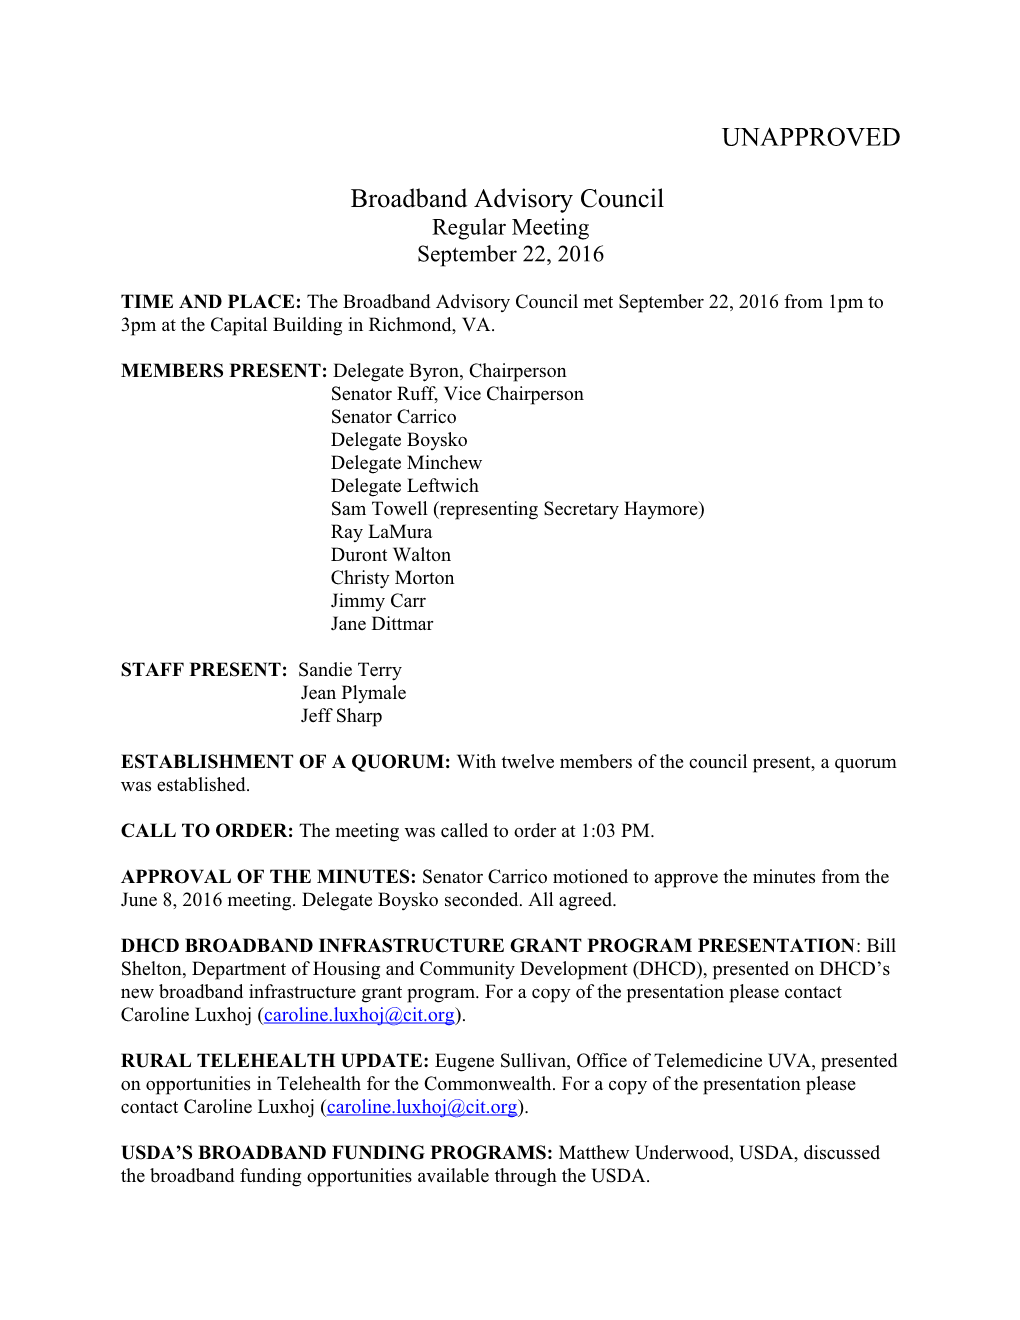 Broadband Advisory Council